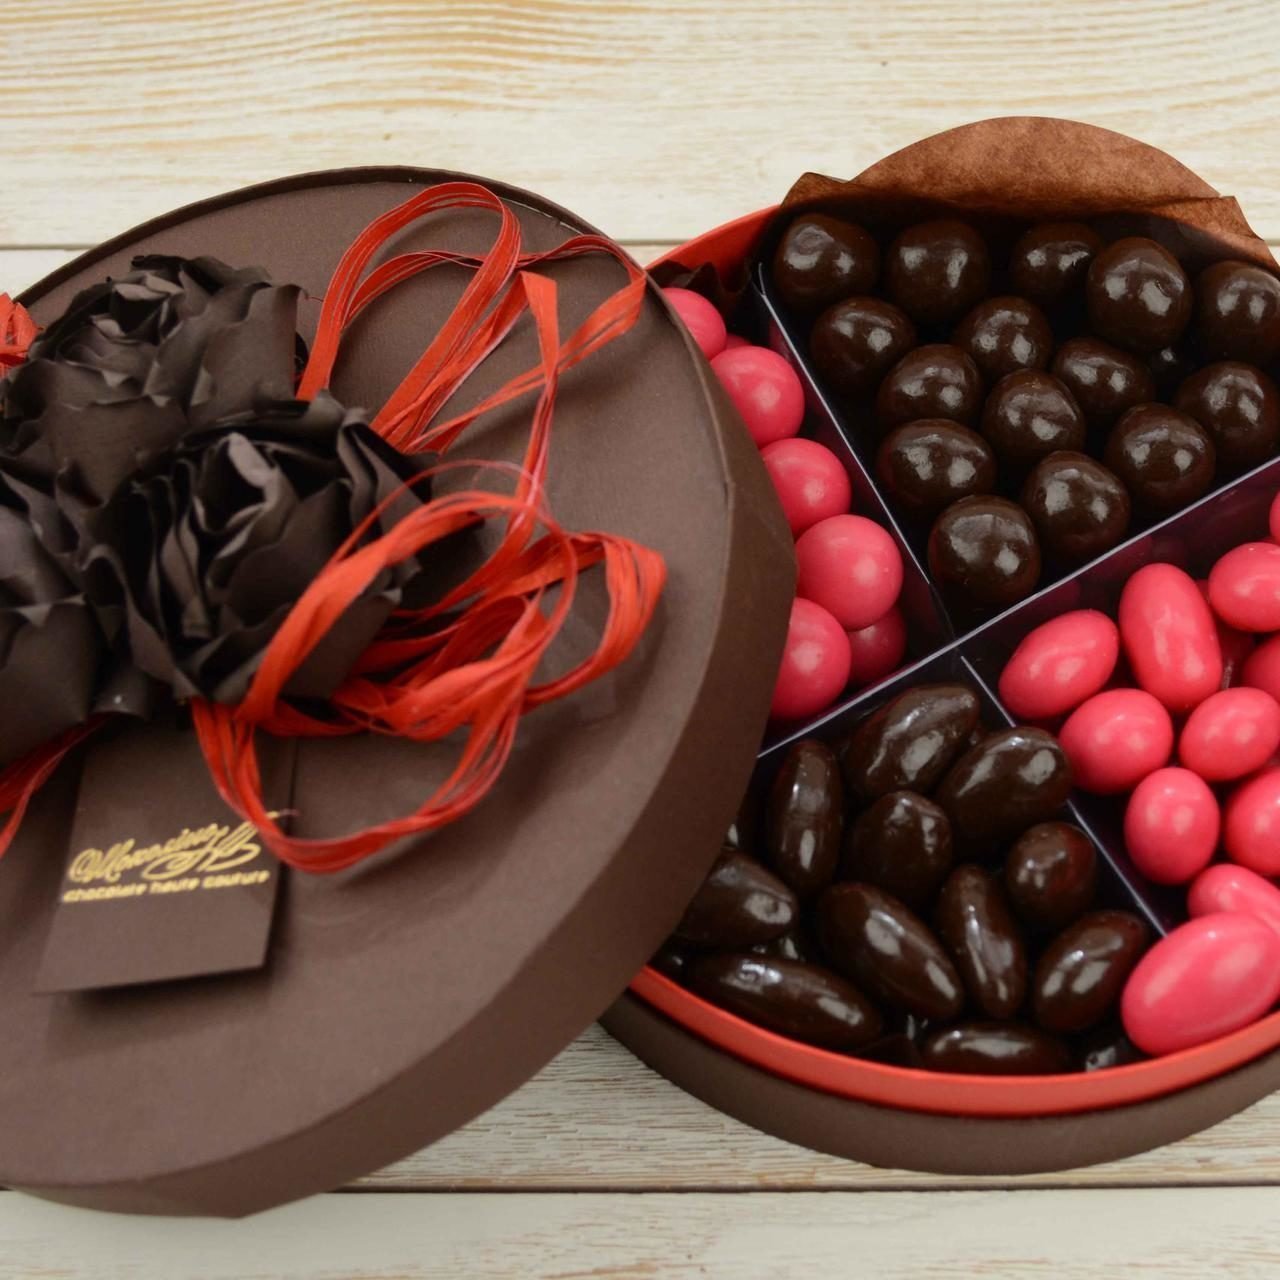 Заказать доставку шоколада. Пралине (бельгийский шоколад). Красивые шоколадные конфеты. Бельгийский шоколад подарочный. Конфеты шоколадные в коробке.